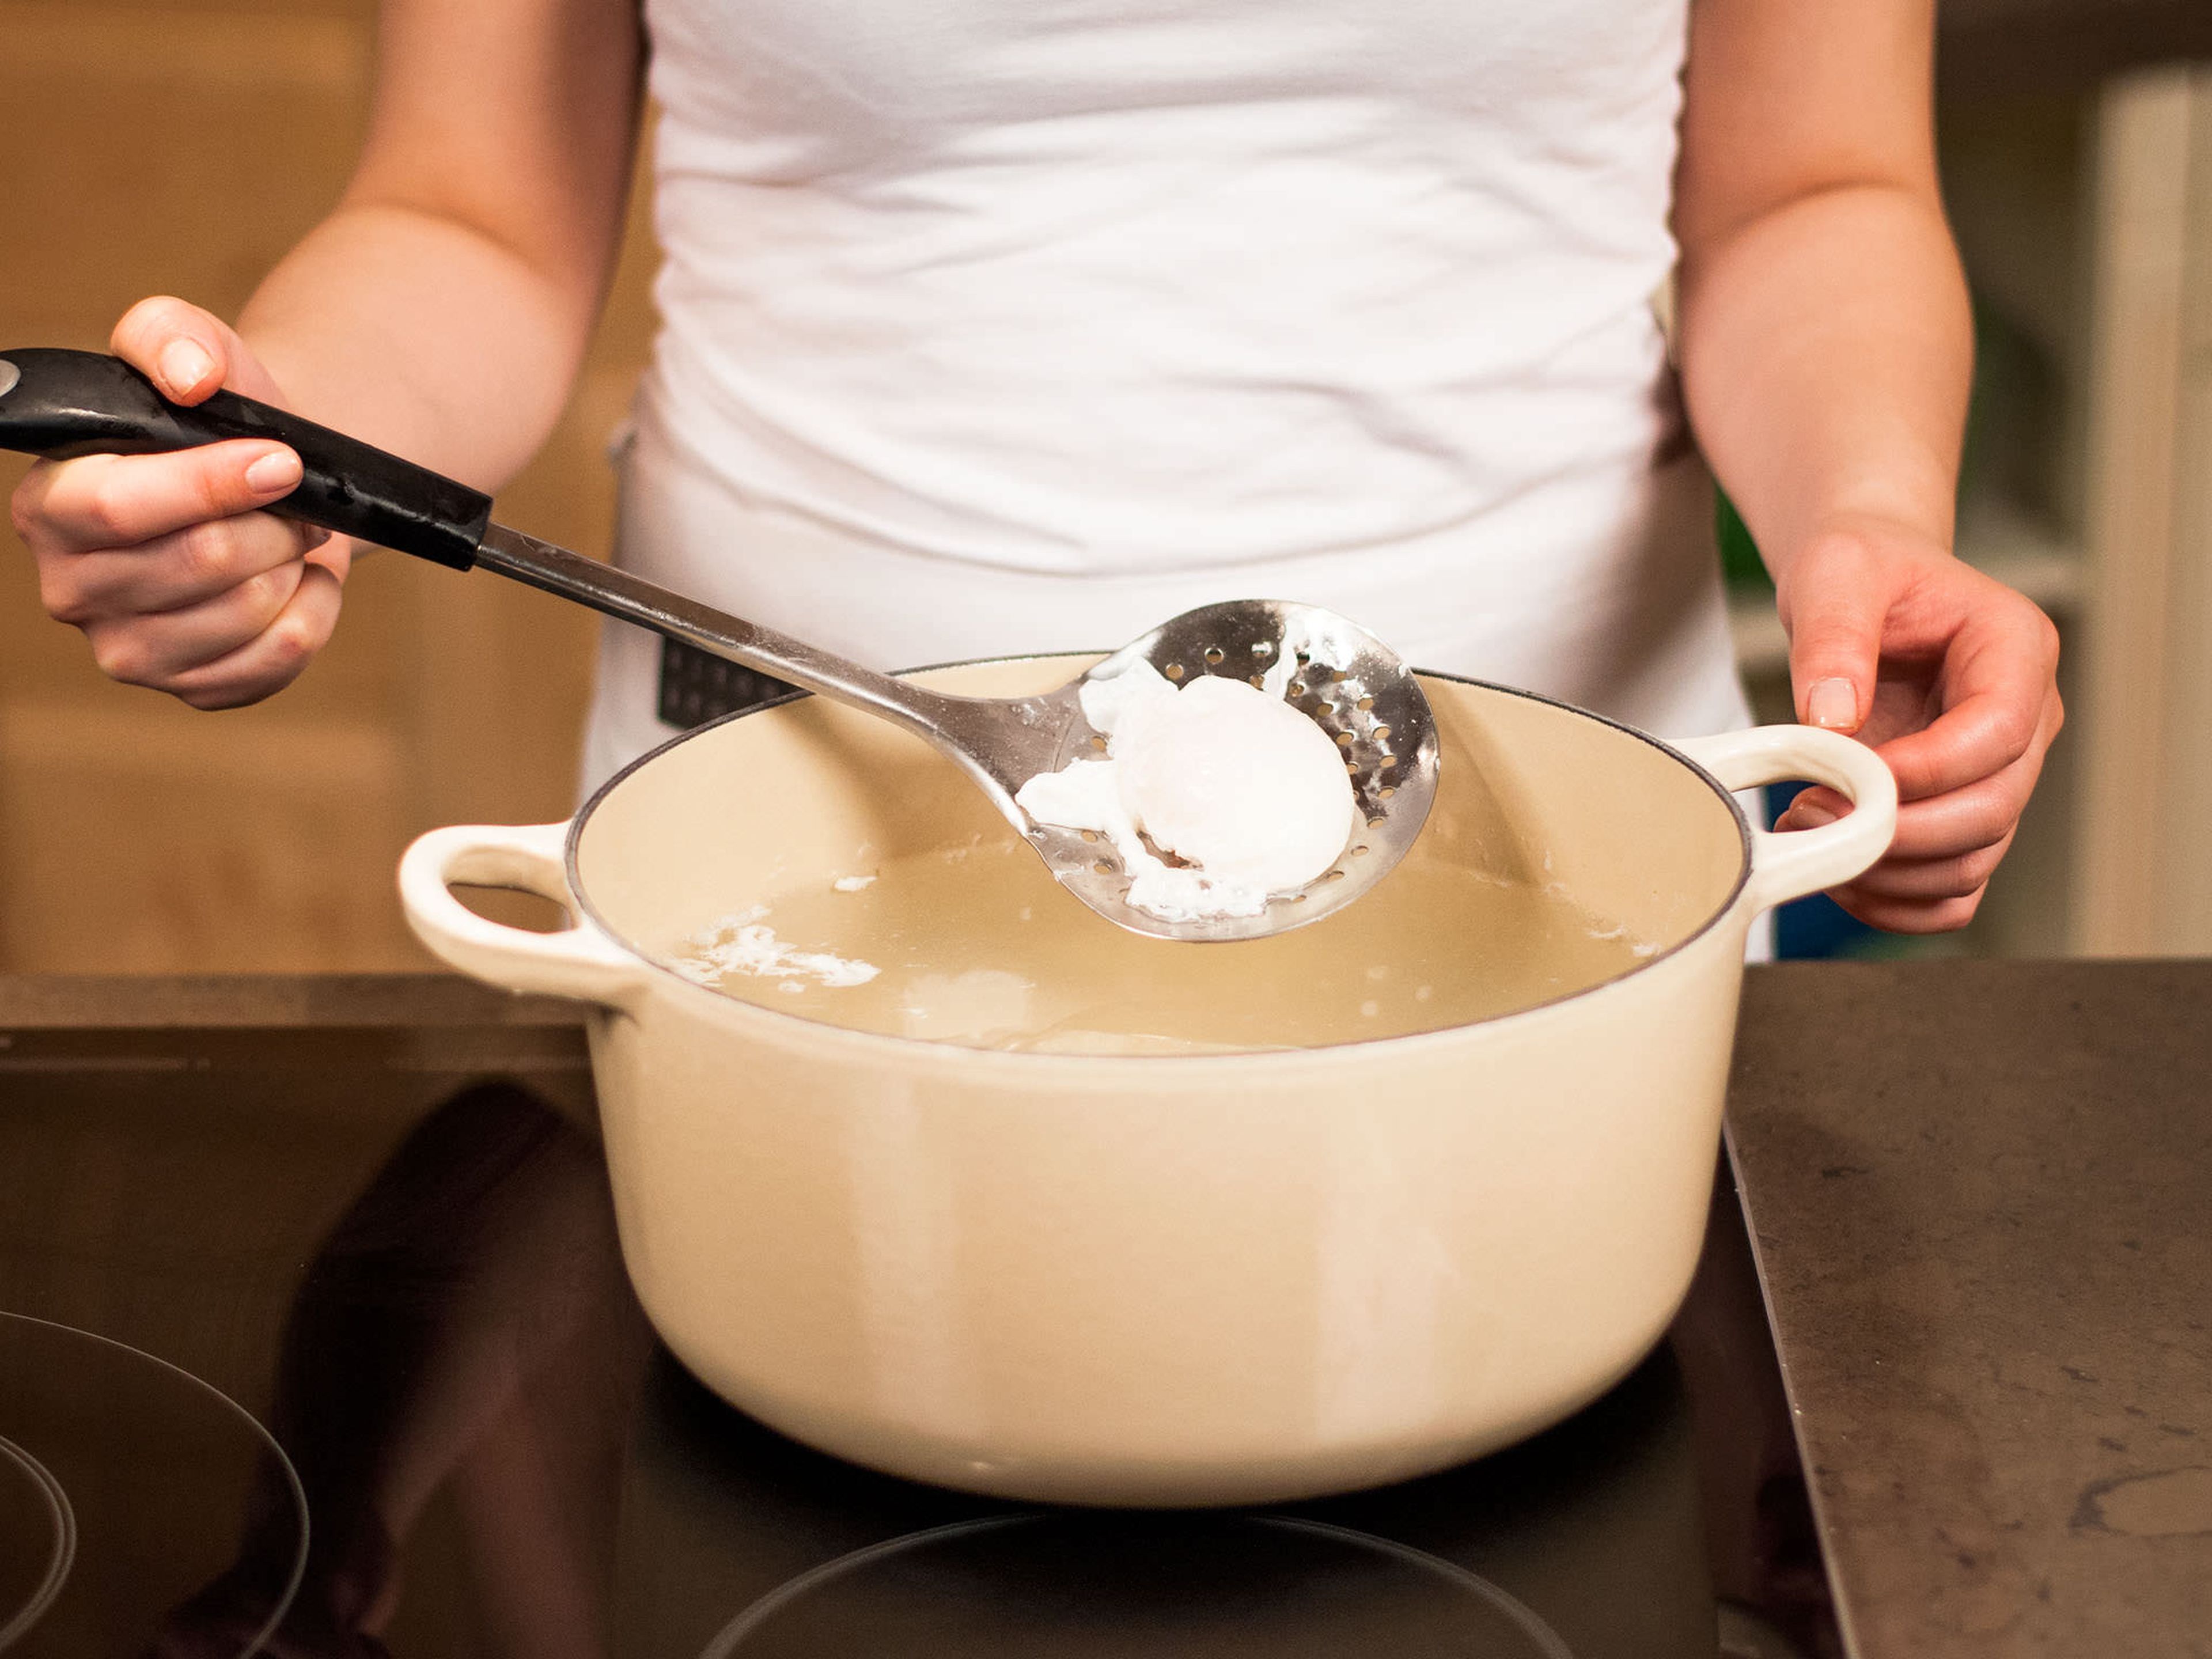 1 Liter Wasser in einem großen Topf erhitzen bis es köchelt. 2 EL Weißweinessig hinzufügen und Eier im Wasser für ca. 3 Min. pochieren. Nun auf einen mit Küchenpapier ausgelegten Teller legen.